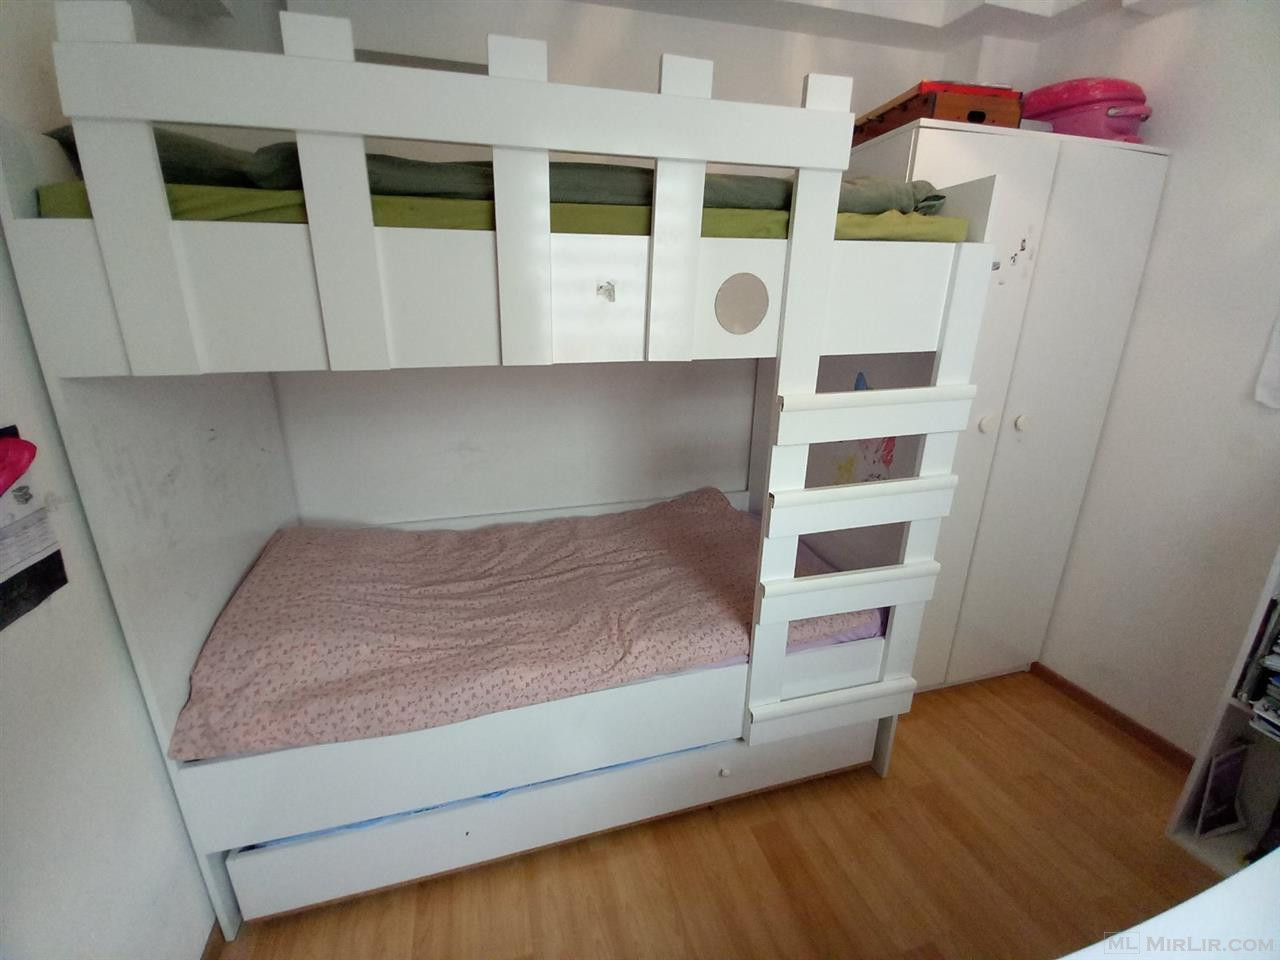 Shitet dhome fjetje per femije 